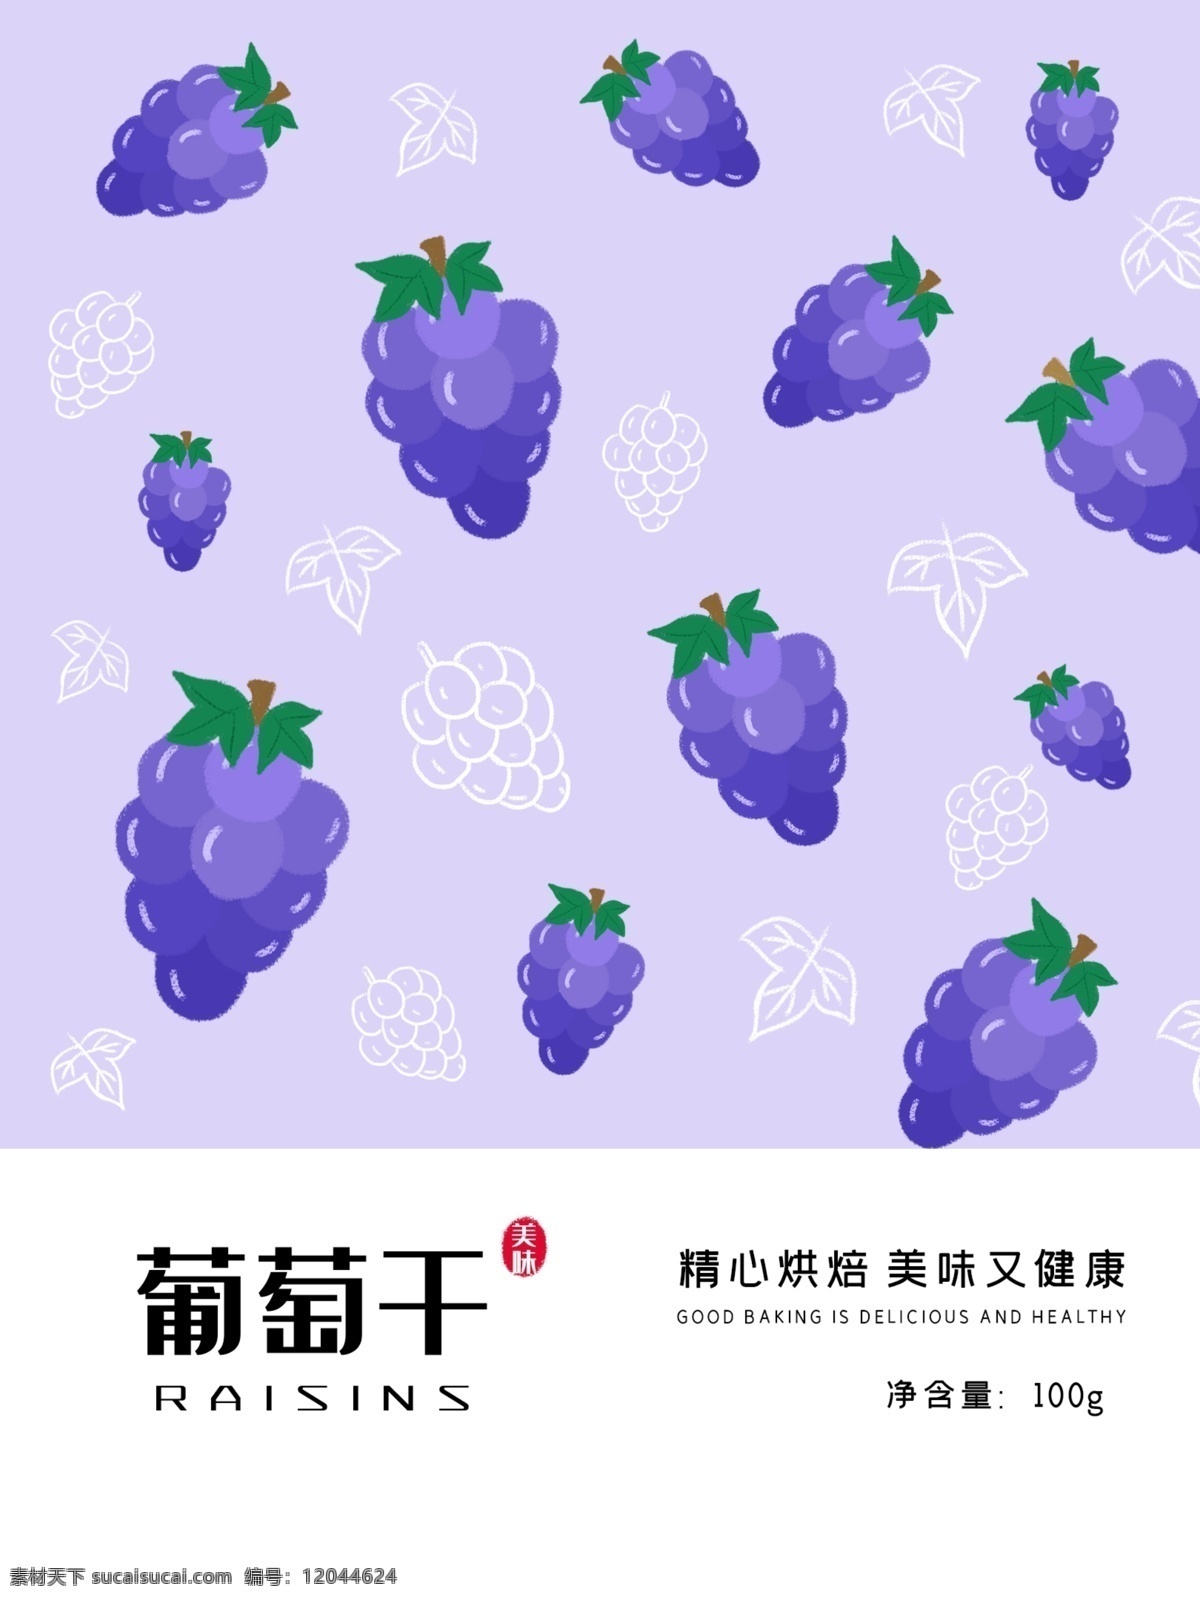 简约 小清 新平 铺 印花 葡萄干 水果 零食 包装 零食包装 果干 果脯 梯子 紫色 食品